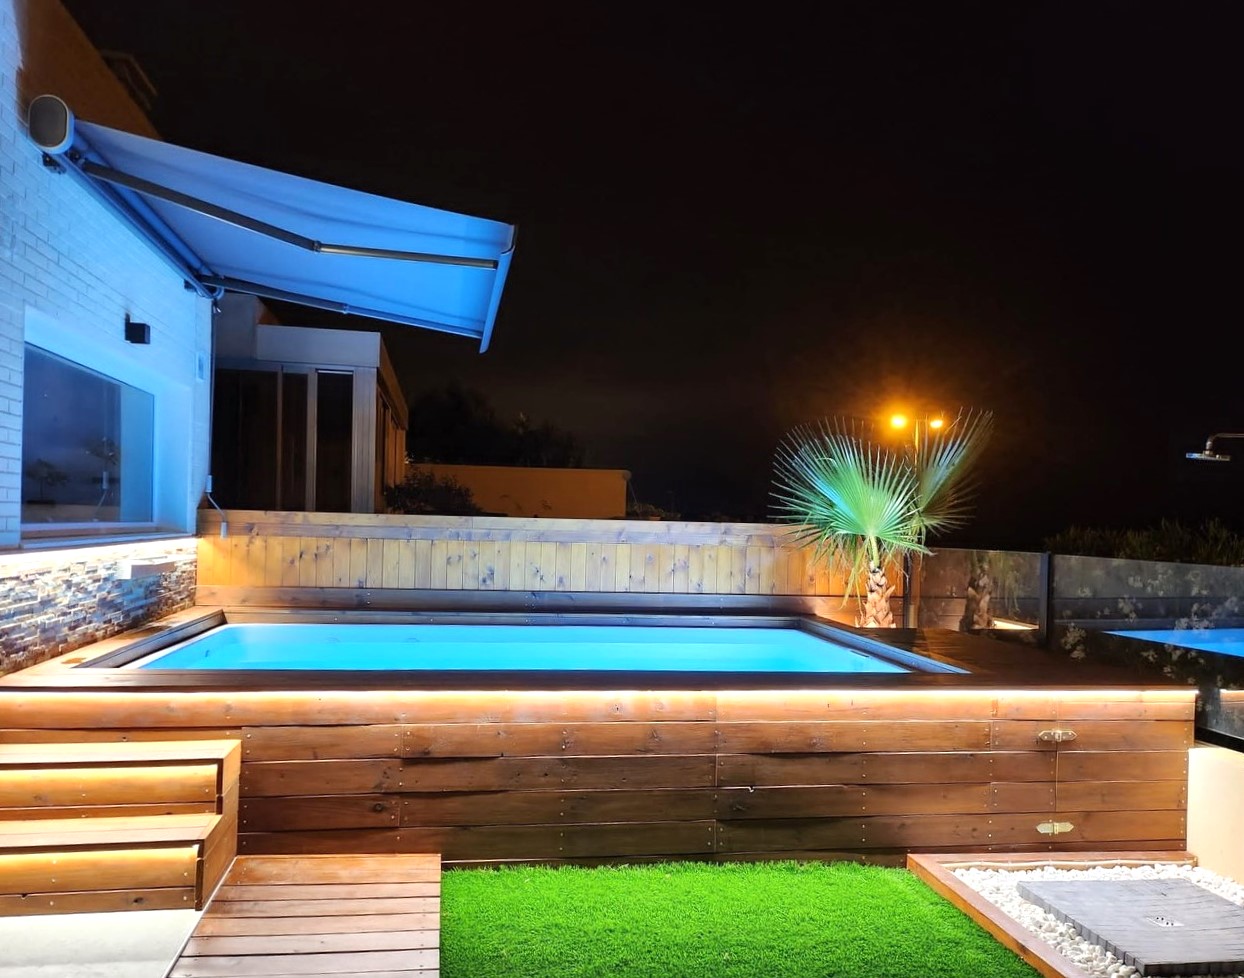 piscina luna de 4 metros de fibra y poliester elevada y revestida con vigas de madera tratada en jardin de noche